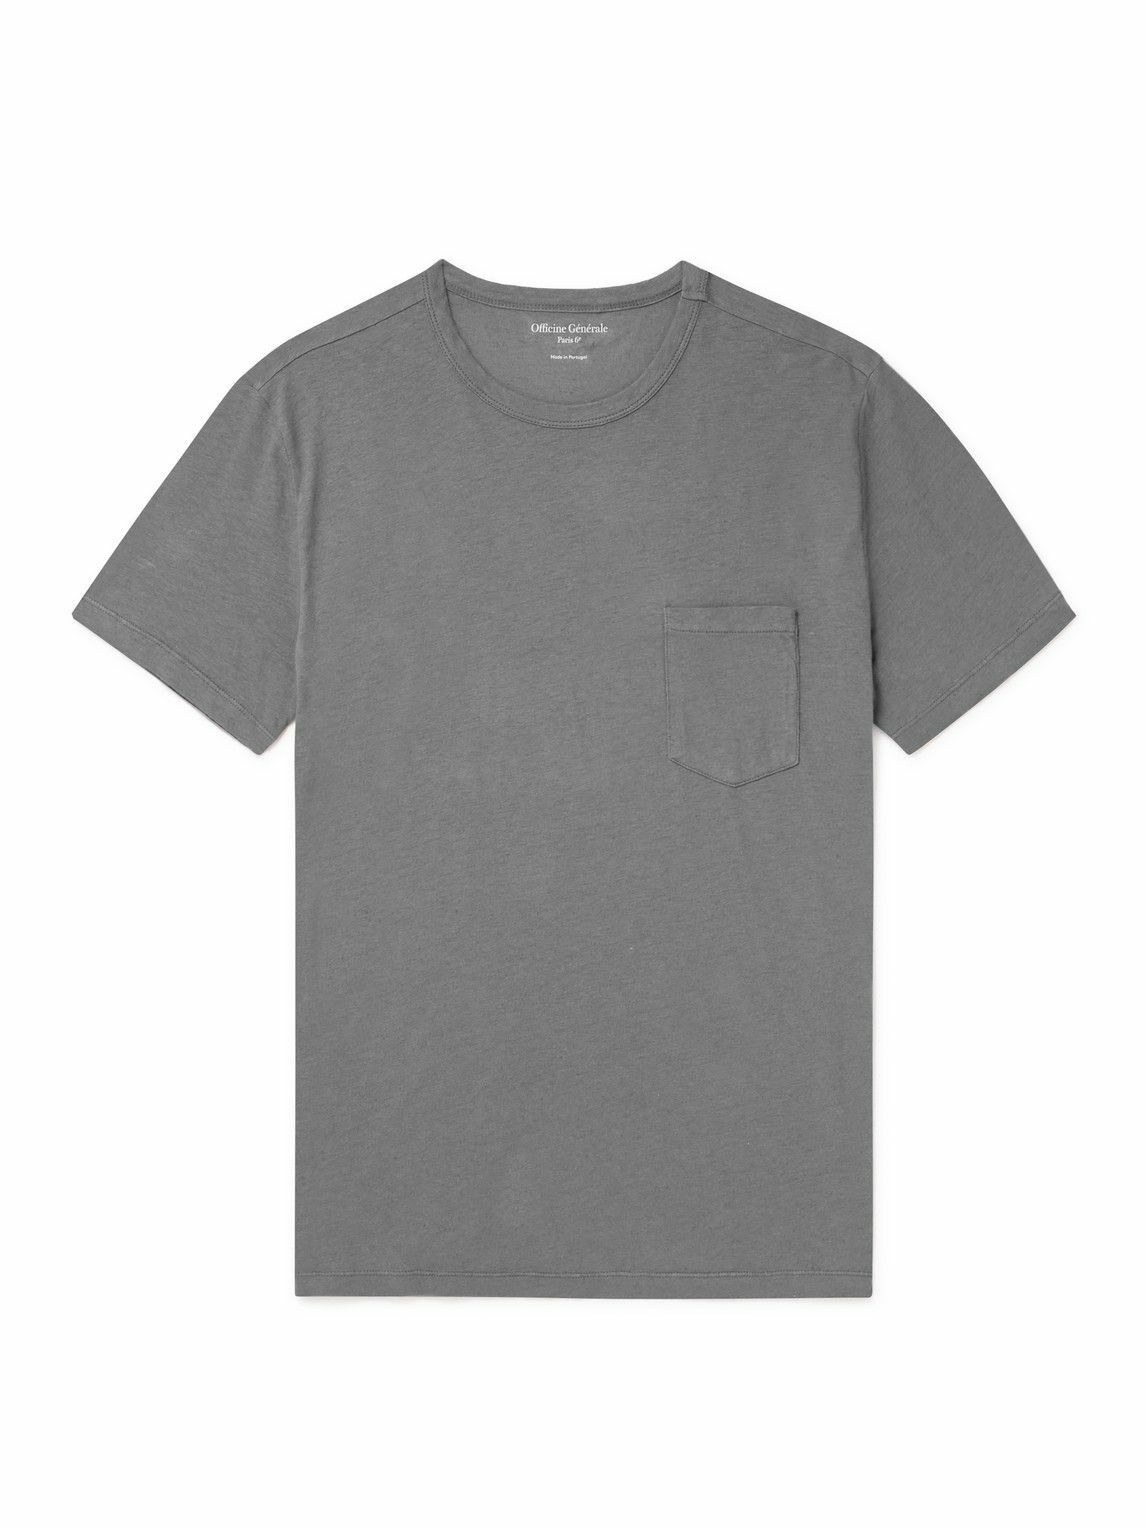 Photo: Officine Générale - Slub Cotton-Blend Jersey T-Shirt - Gray